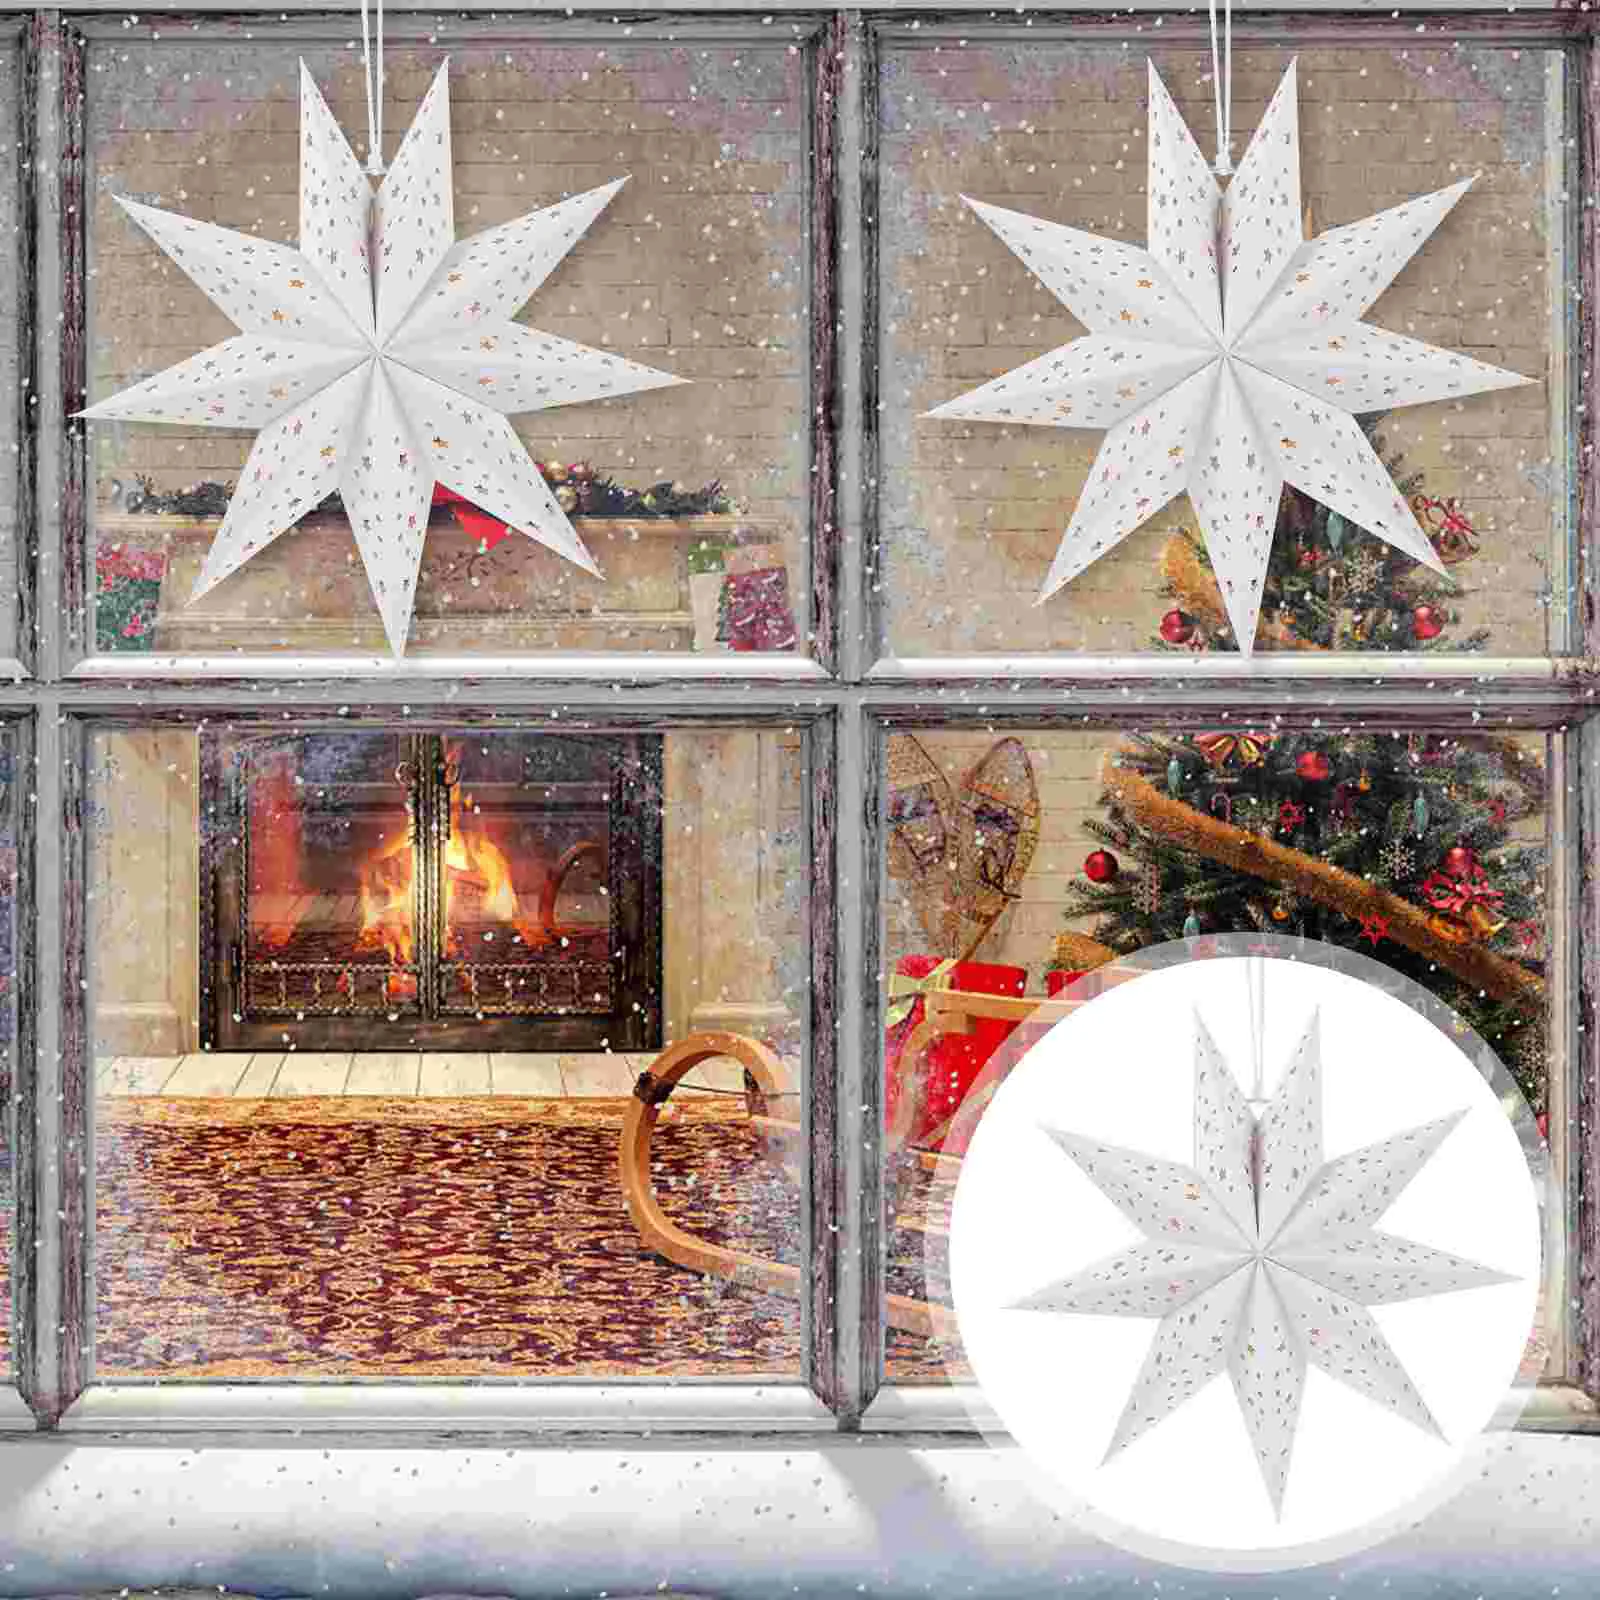 

3 шт. бумажные фонарики девять острых звезд, украшения для рождественской елки, шатер, лампы, чехлы